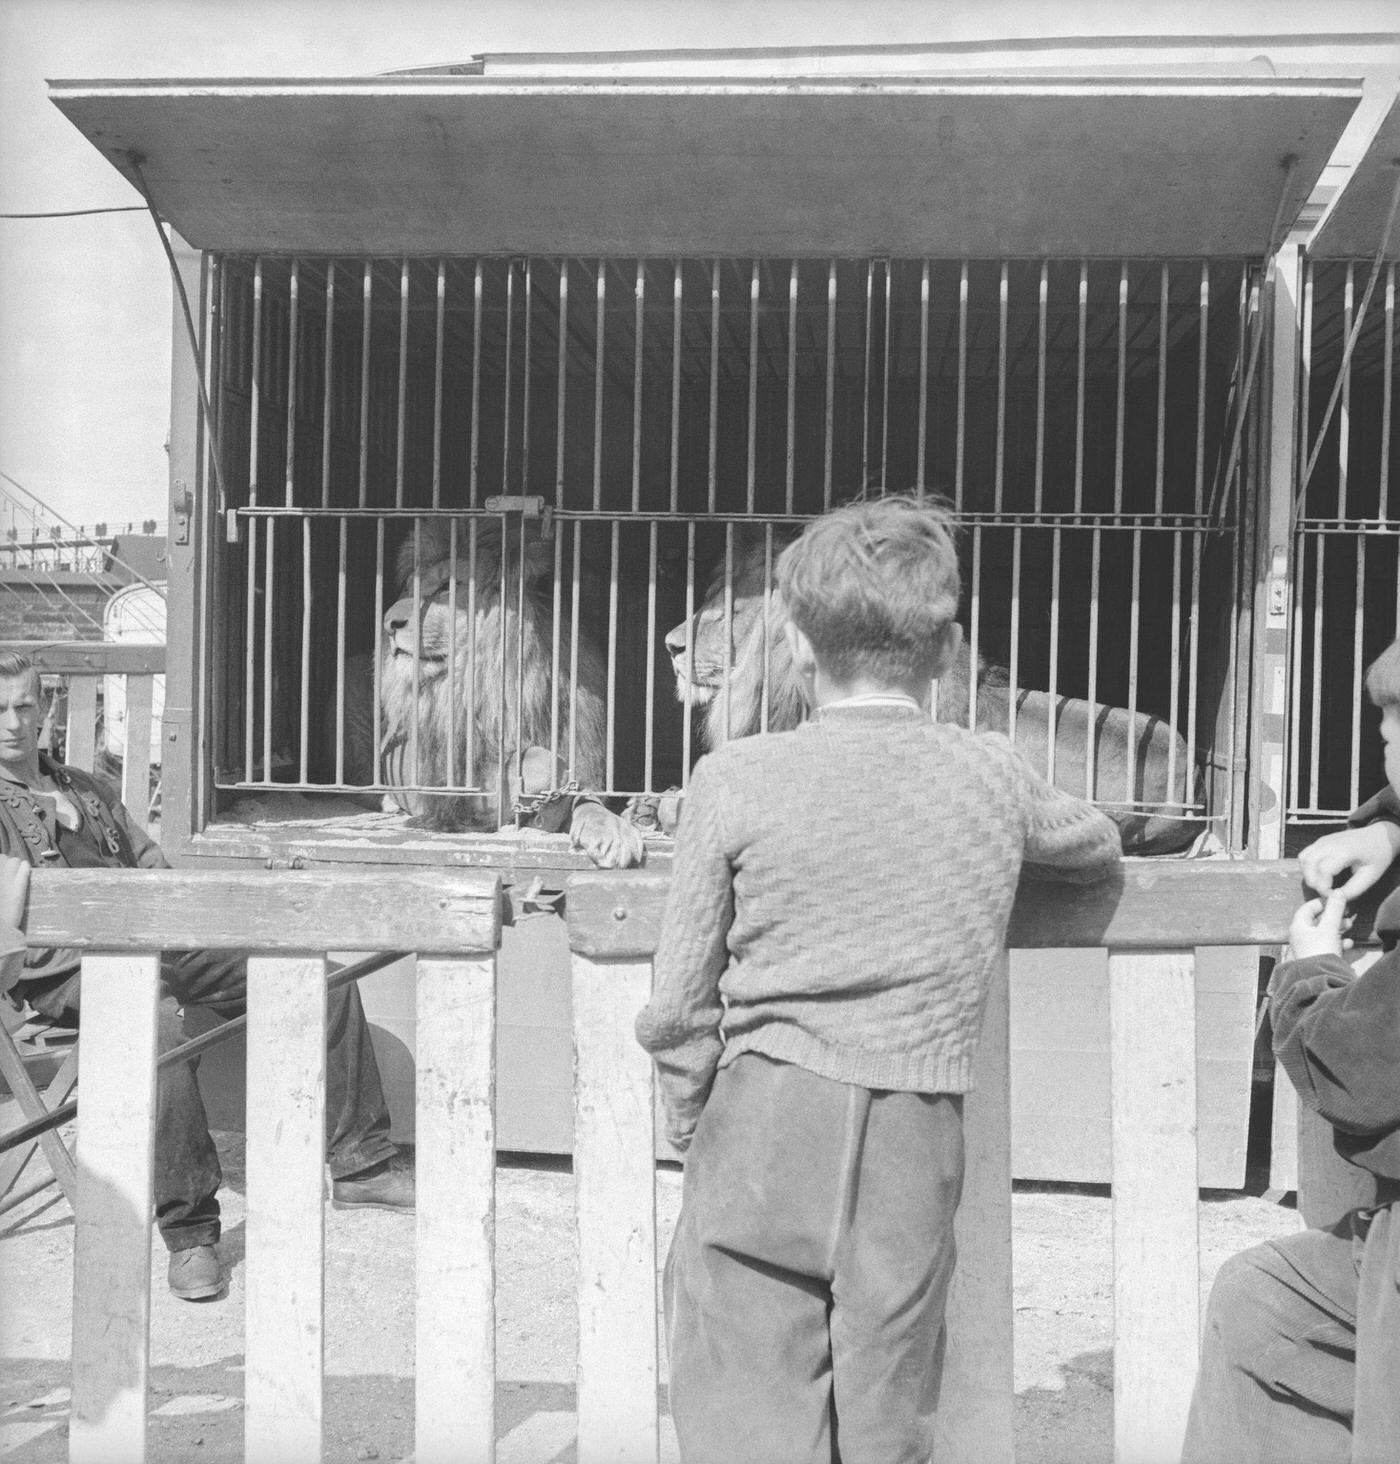 A boy looking at lions at Circus Rebernigg in Vienna, April 1956.